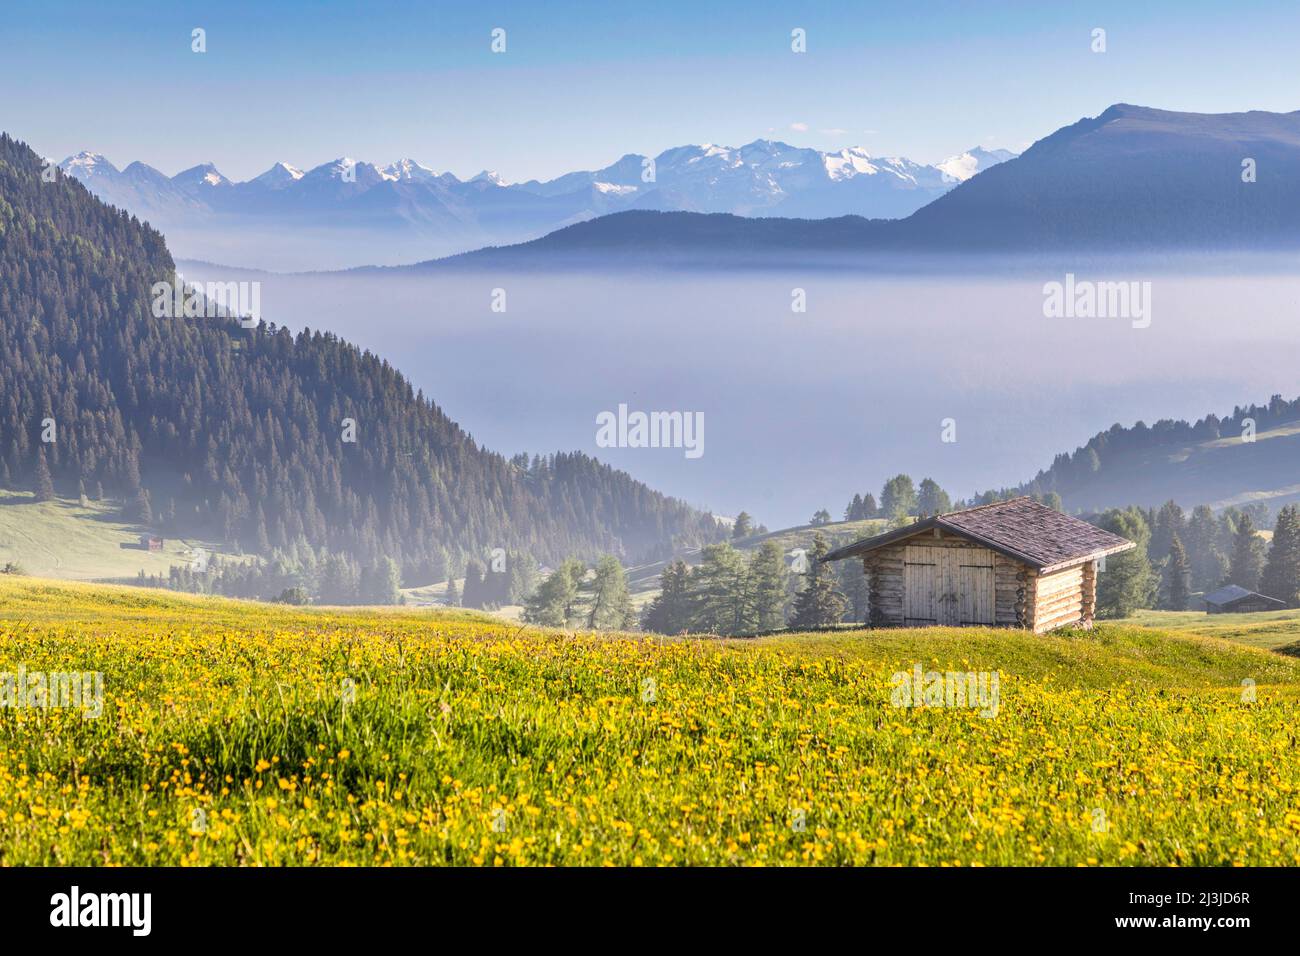 Italia, Alto Adige / Südtirol, Castelrotto / Kastelruth, Alpe di Siusi / alpe di Siusi - capanna in legno e prati verdi con fossi in fondo alla valle Foto Stock